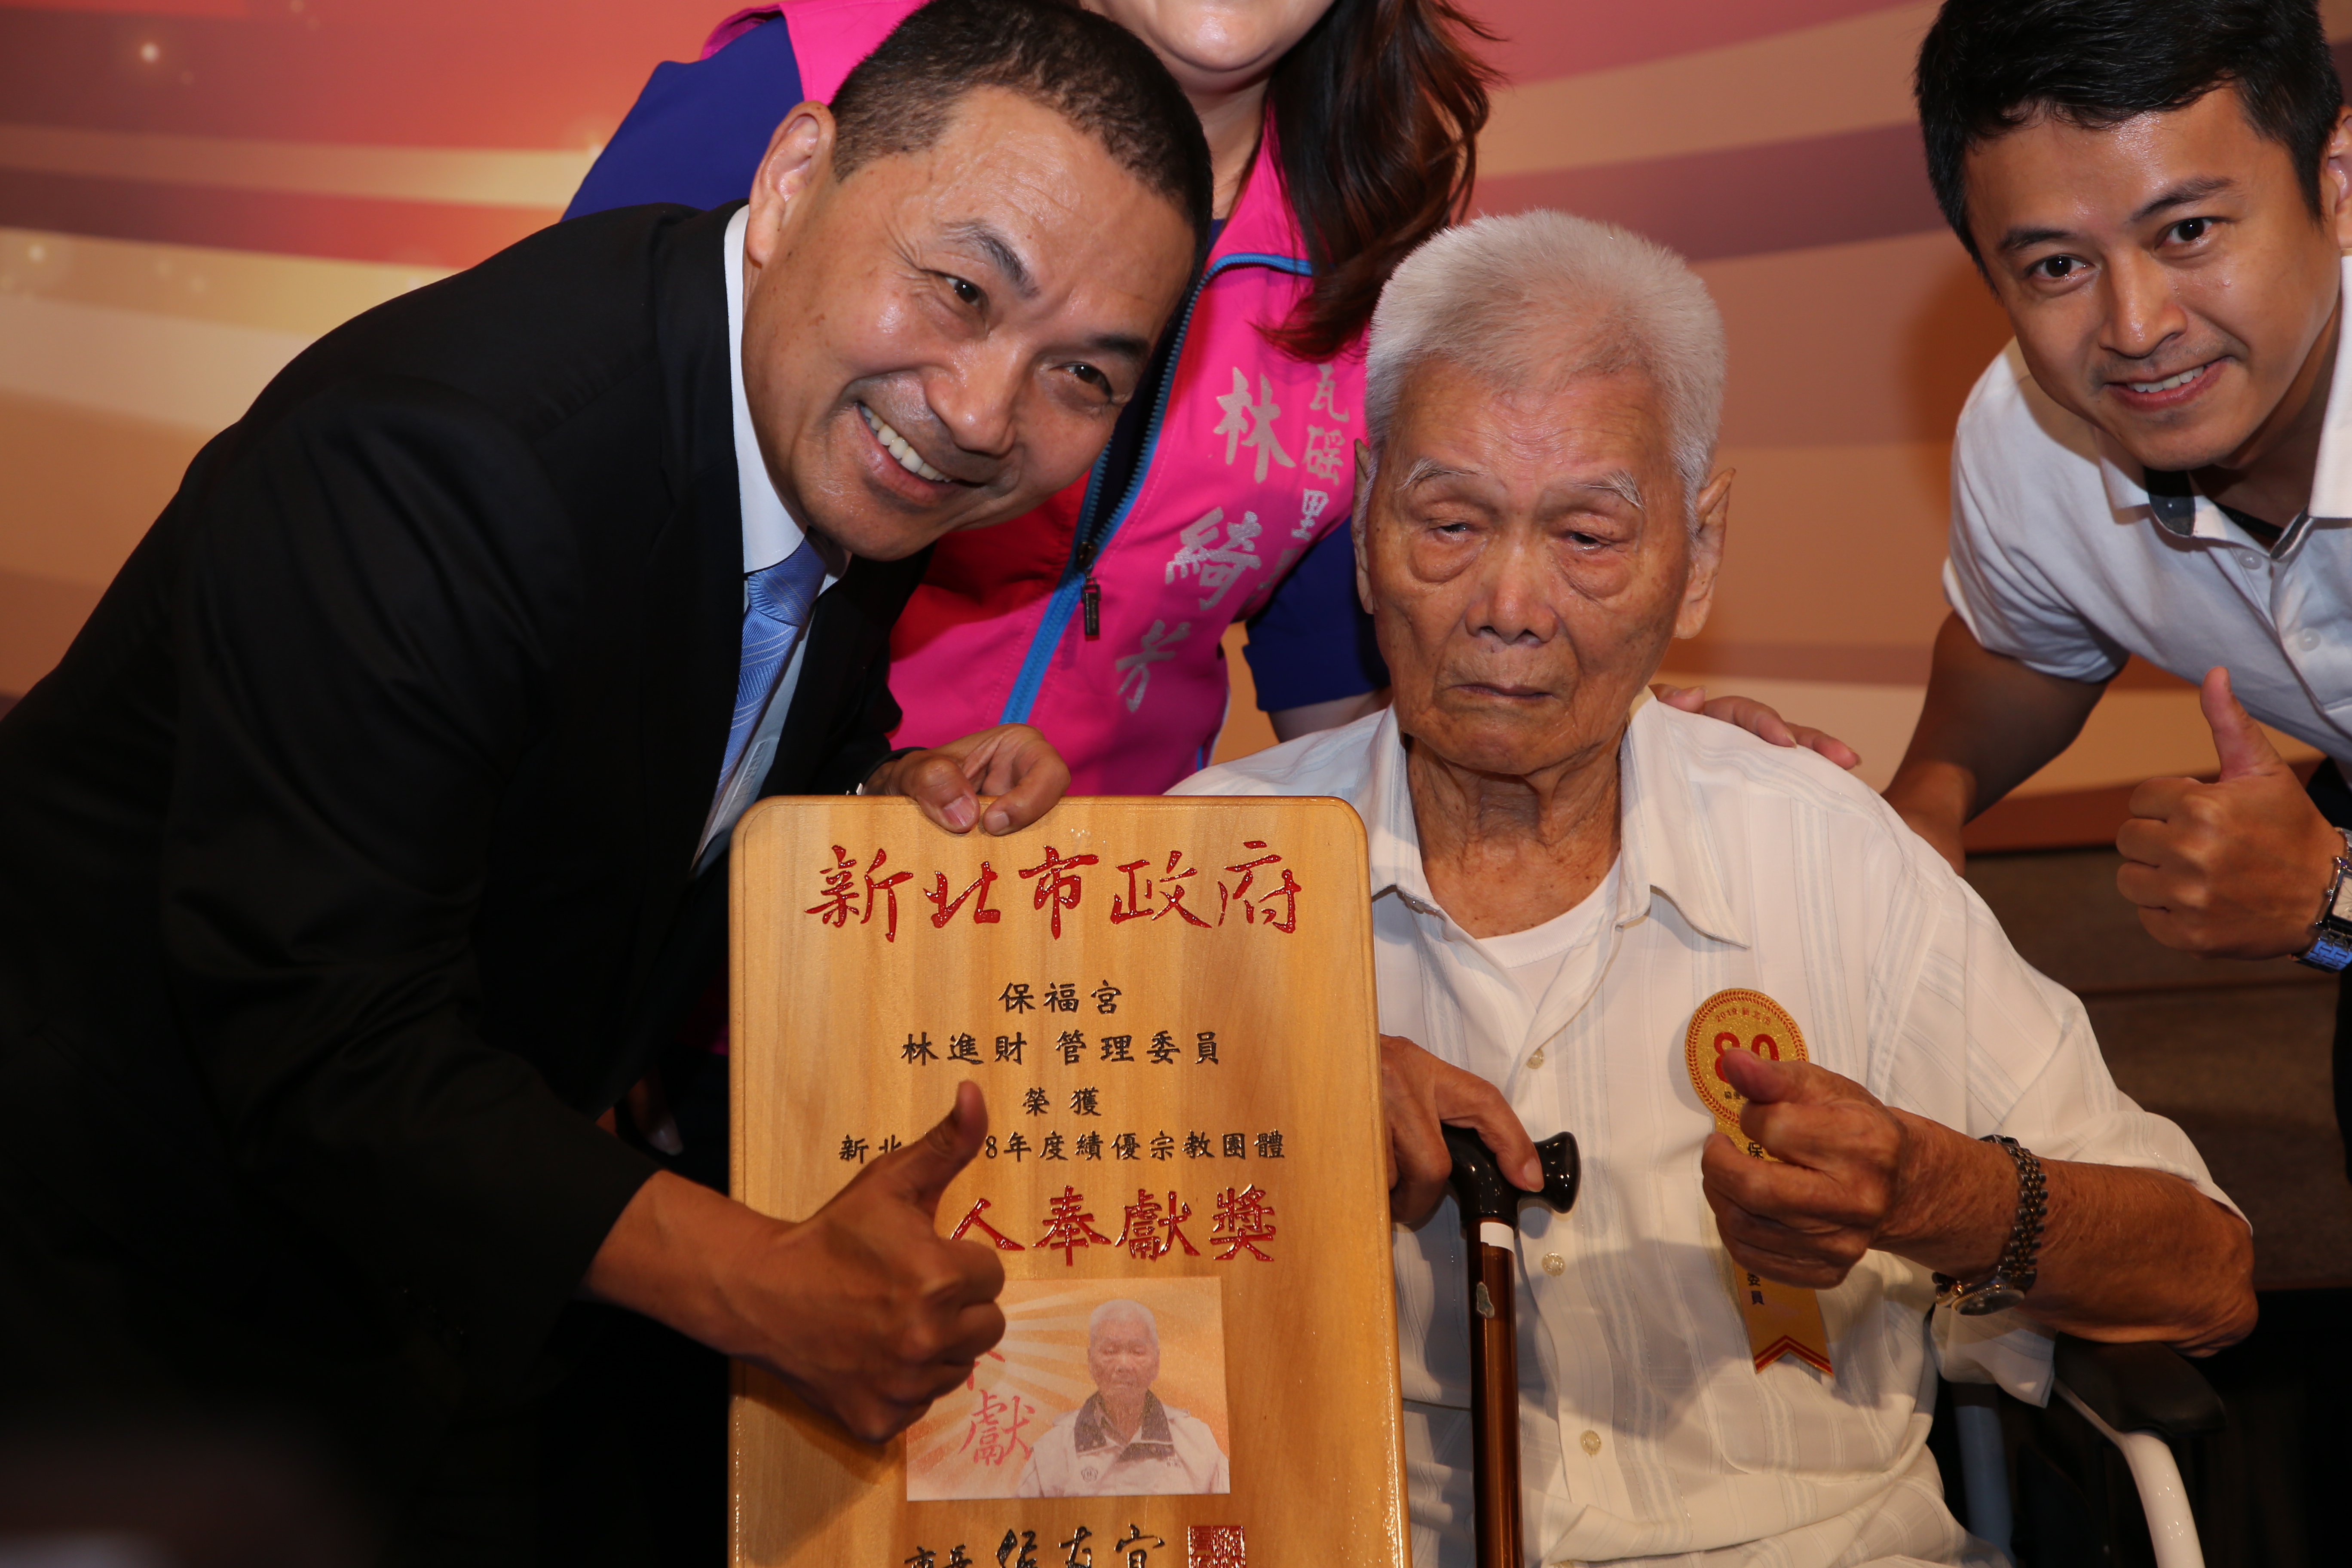 「個人奉獻獎」的百歲人瑞林進財（右坐輪椅者），在永和保福宮服務30年，平時十分熱心公益，深獲地方好評。